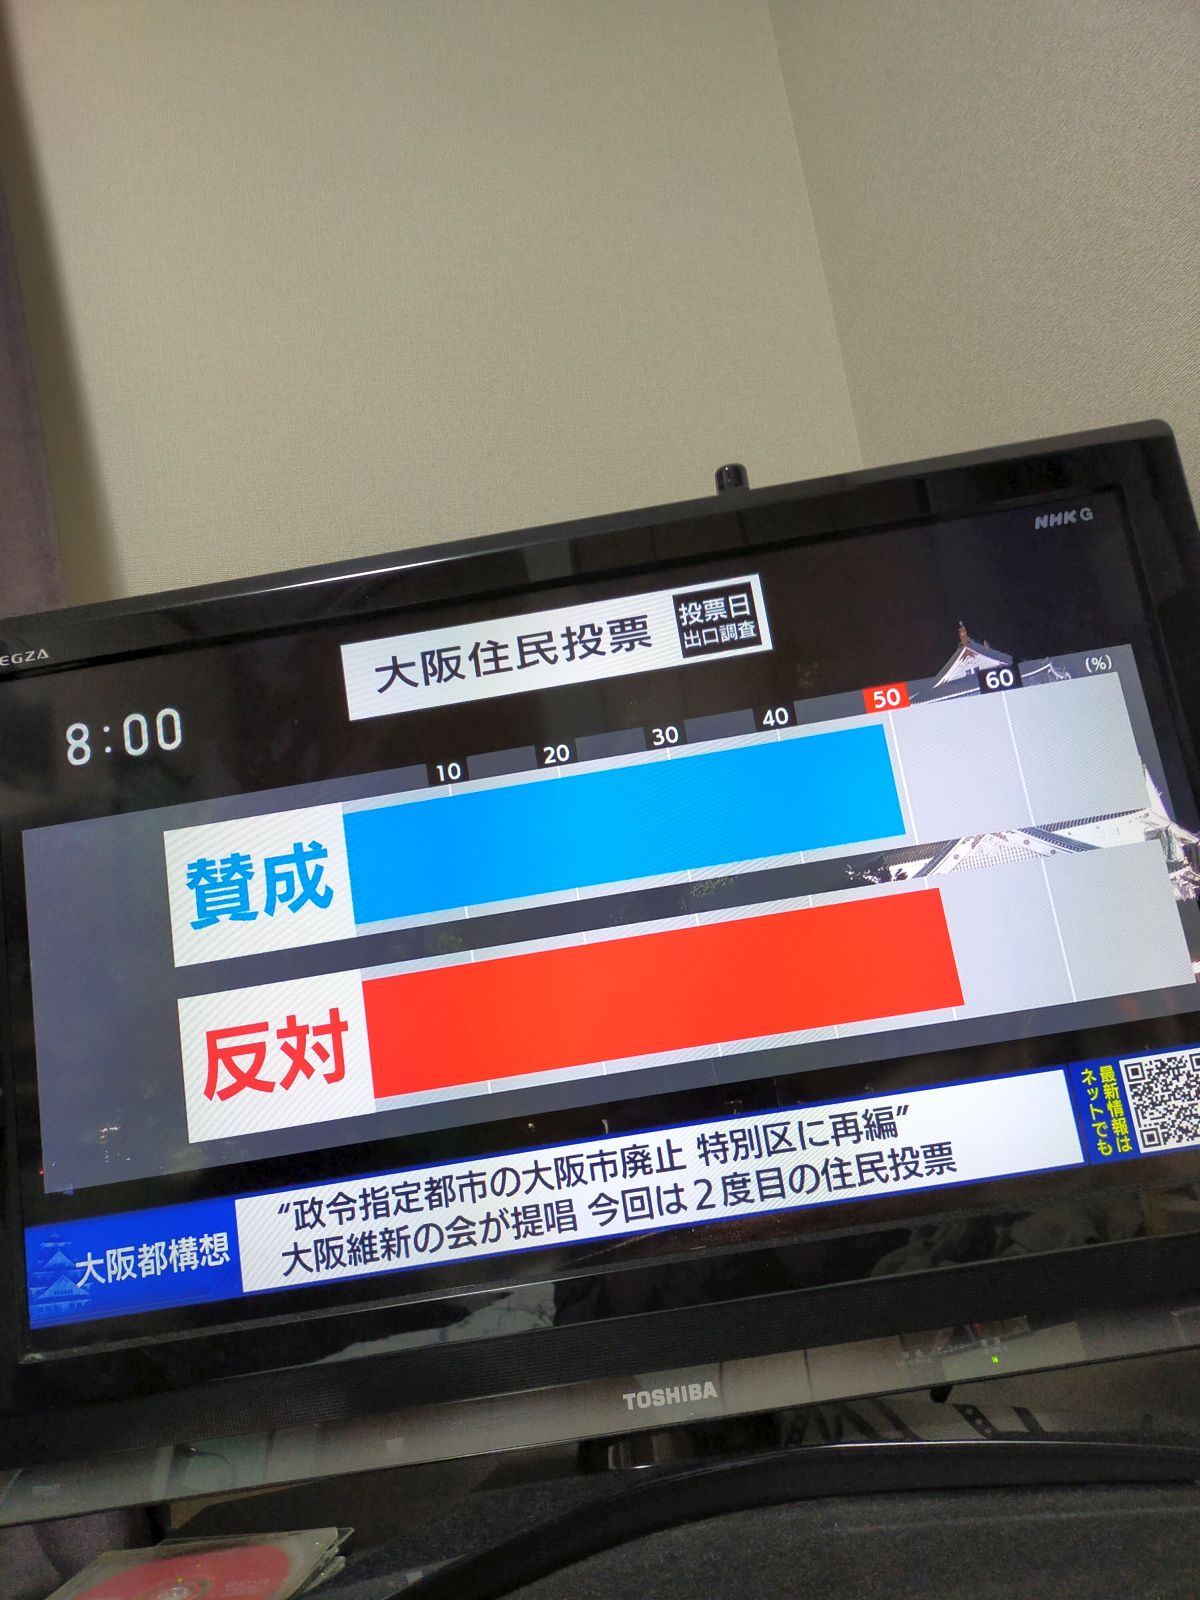 大阪住民投票の出口調査結果